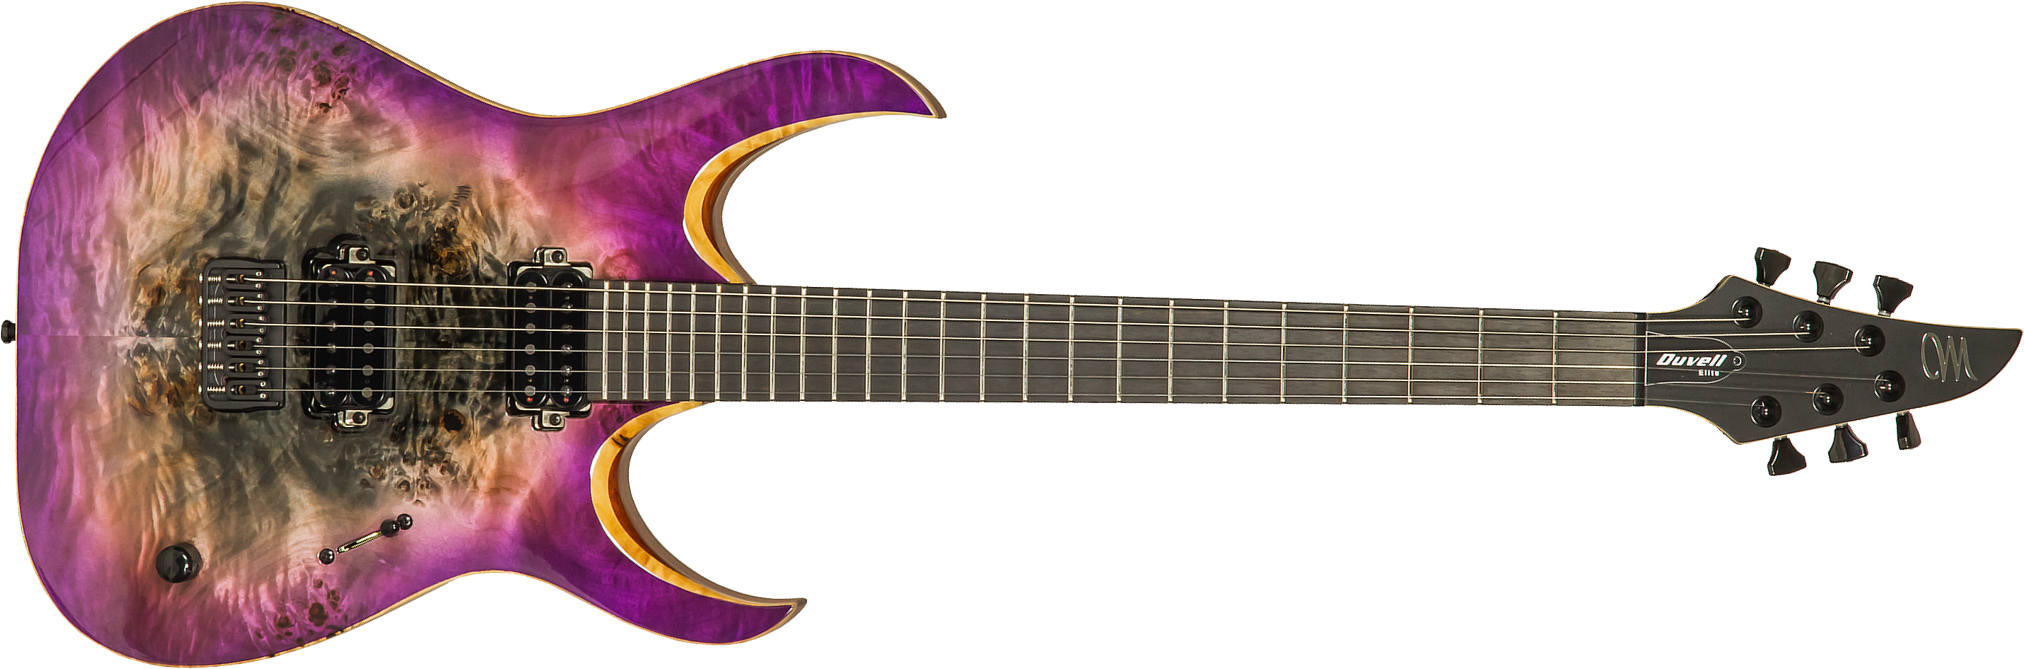 Mayones Guitars Duvell Elite 6 Hh Seymour Duncan Ht Eb #df2105470 - Supernova Purple - Metalen elektrische gitaar - Main picture